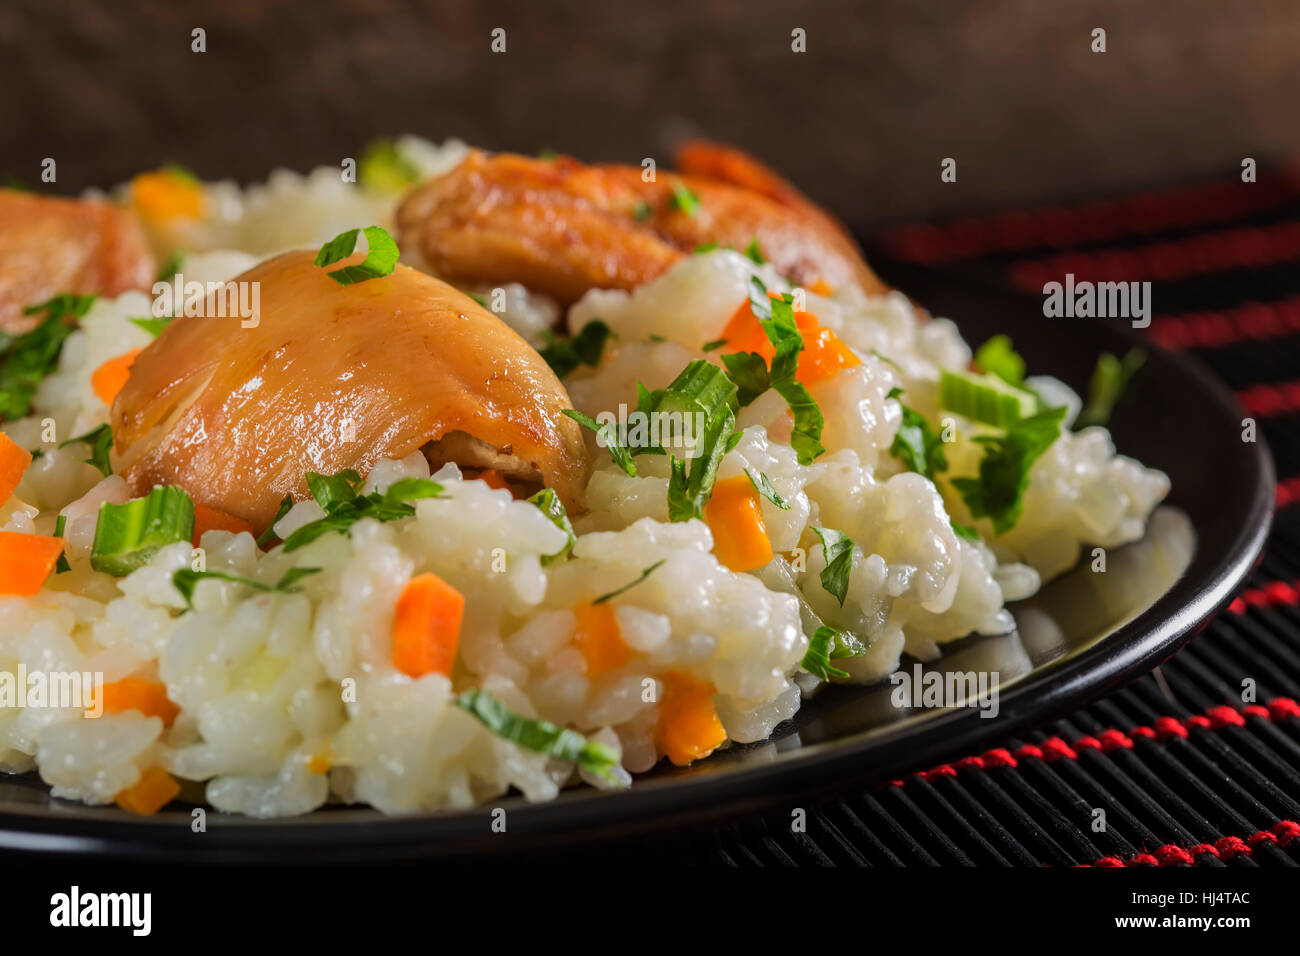 Pilaf - rumeno tradizionale cibo fatto con carne di pollo, riso e verdure su sfondo scuro Foto Stock